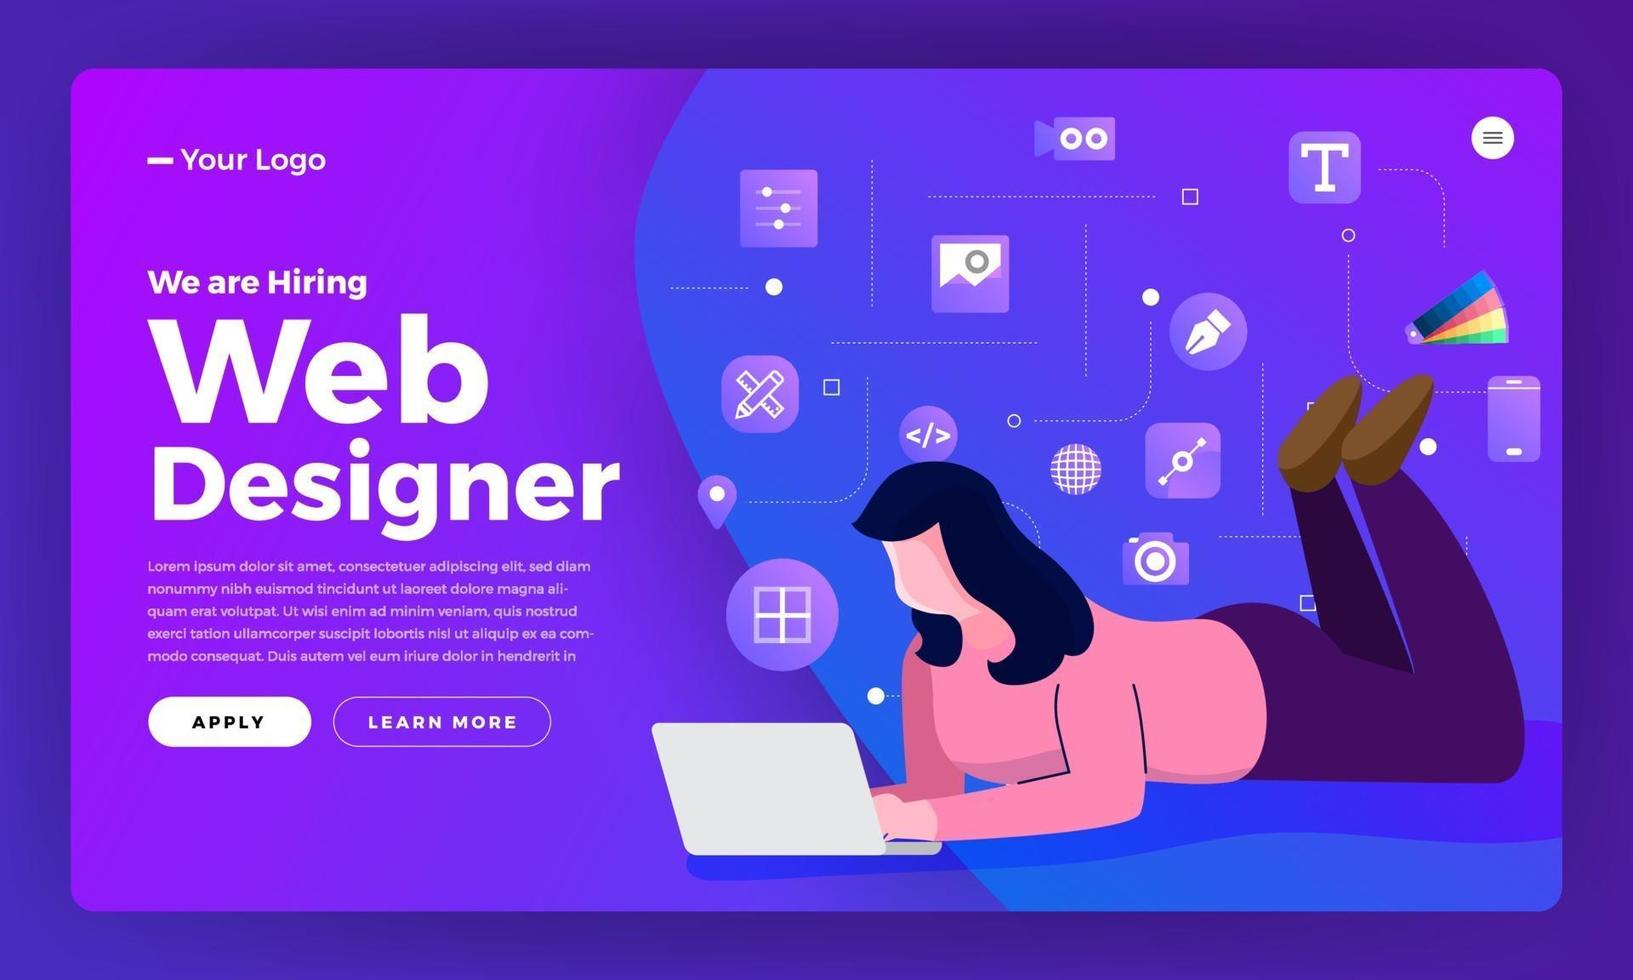 Zielseite für die Ankündigung von Webdesignern vektor